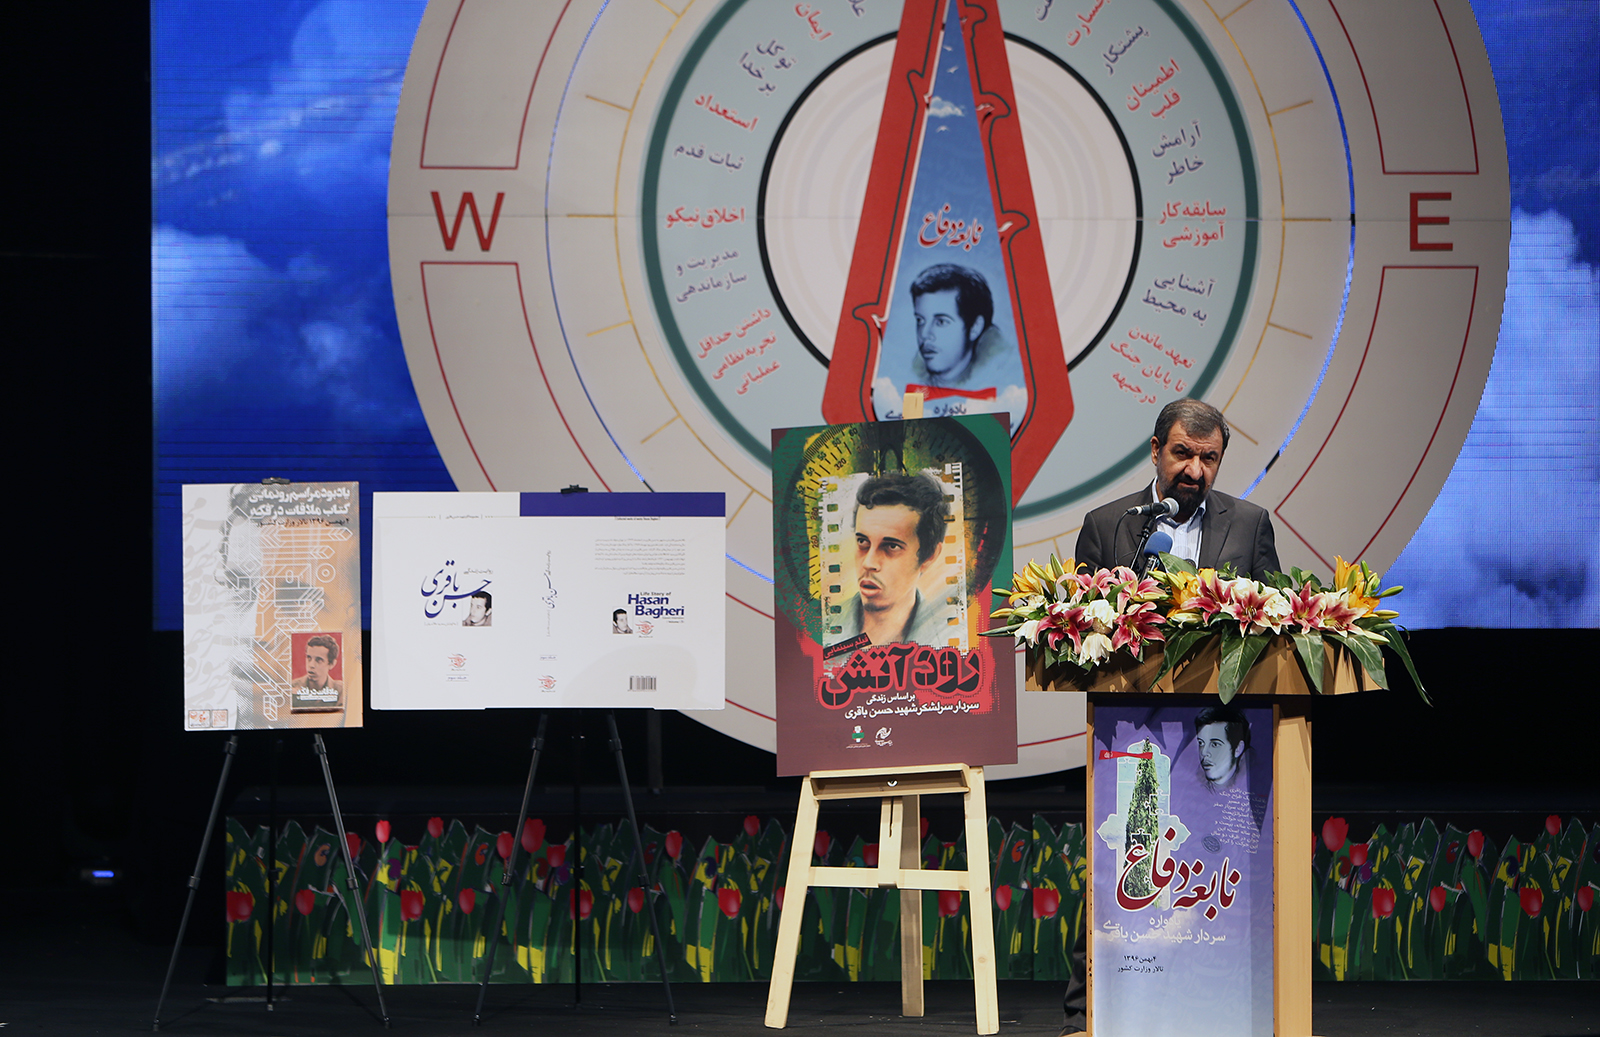 سرلشکر پاسدار دکتر محسن رضایی در یادواره نابغه دفاع: در چهره شهید حسن باقری،ارزش های انقلاب و دفاع مقدس را می توان مشاهده کرد